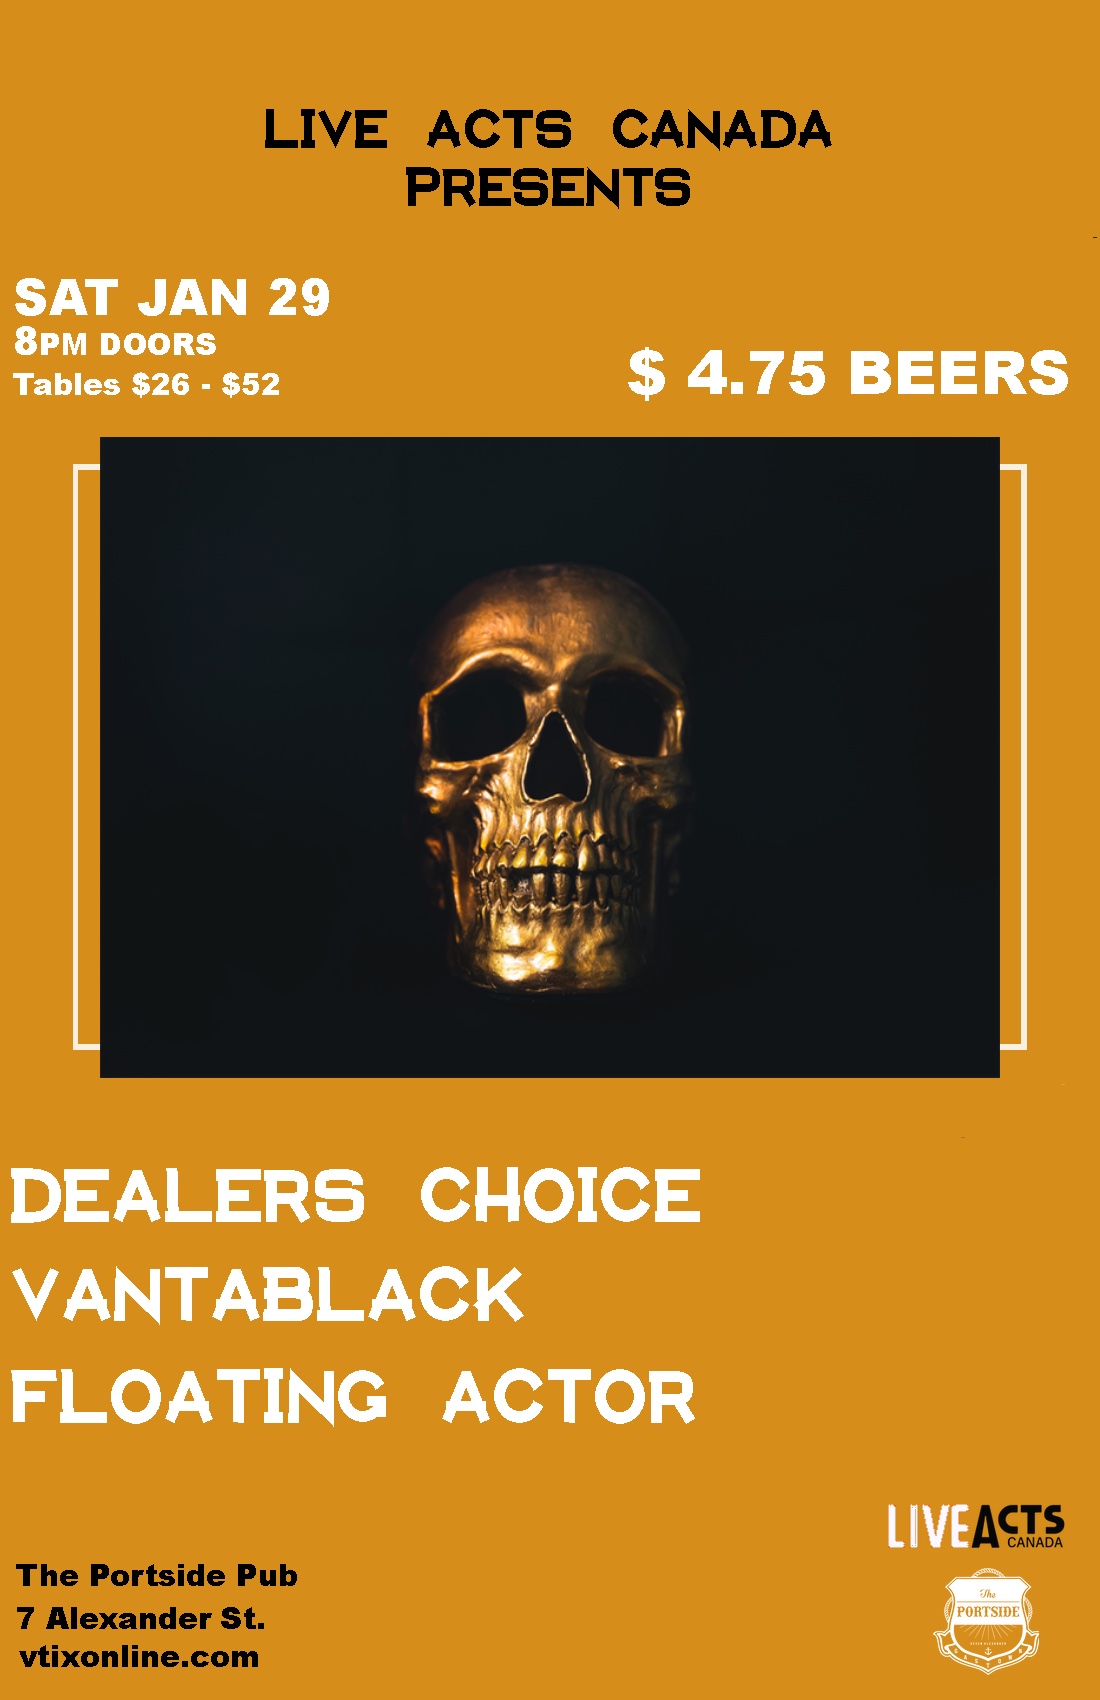 Dealers choice + Vantablack + Floating Actor